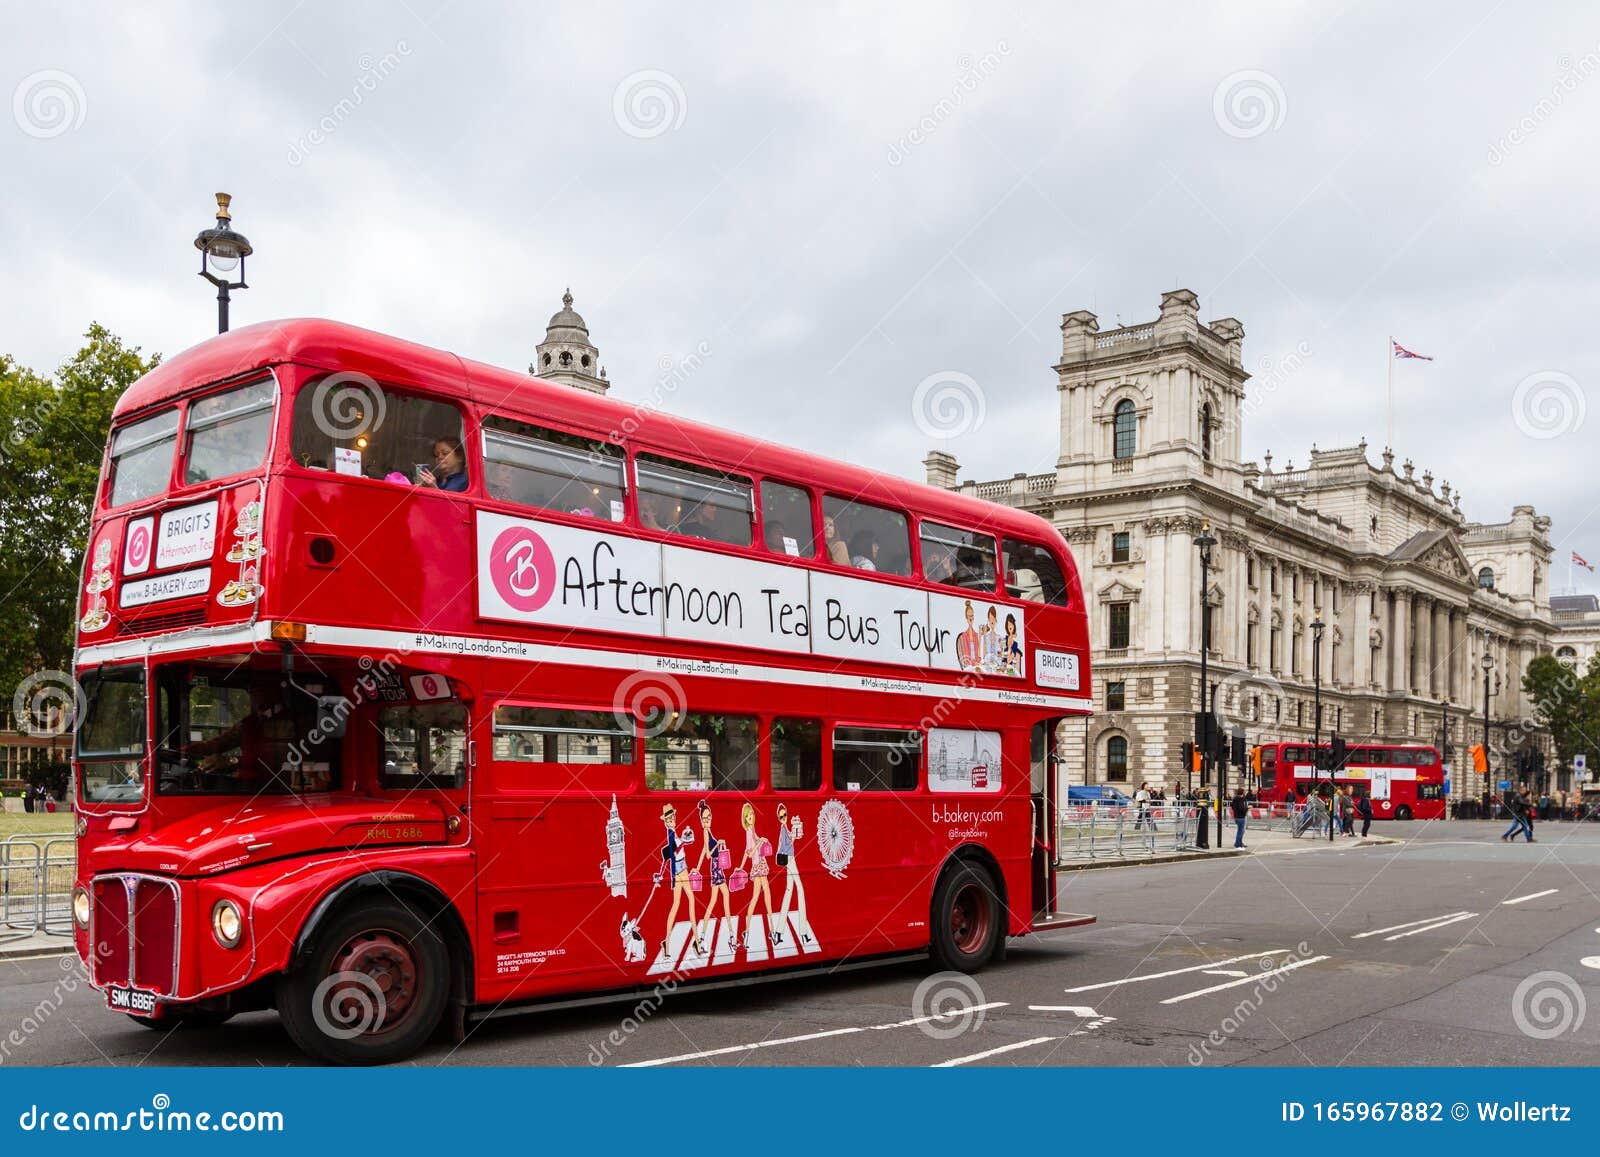 red bus tours london uk